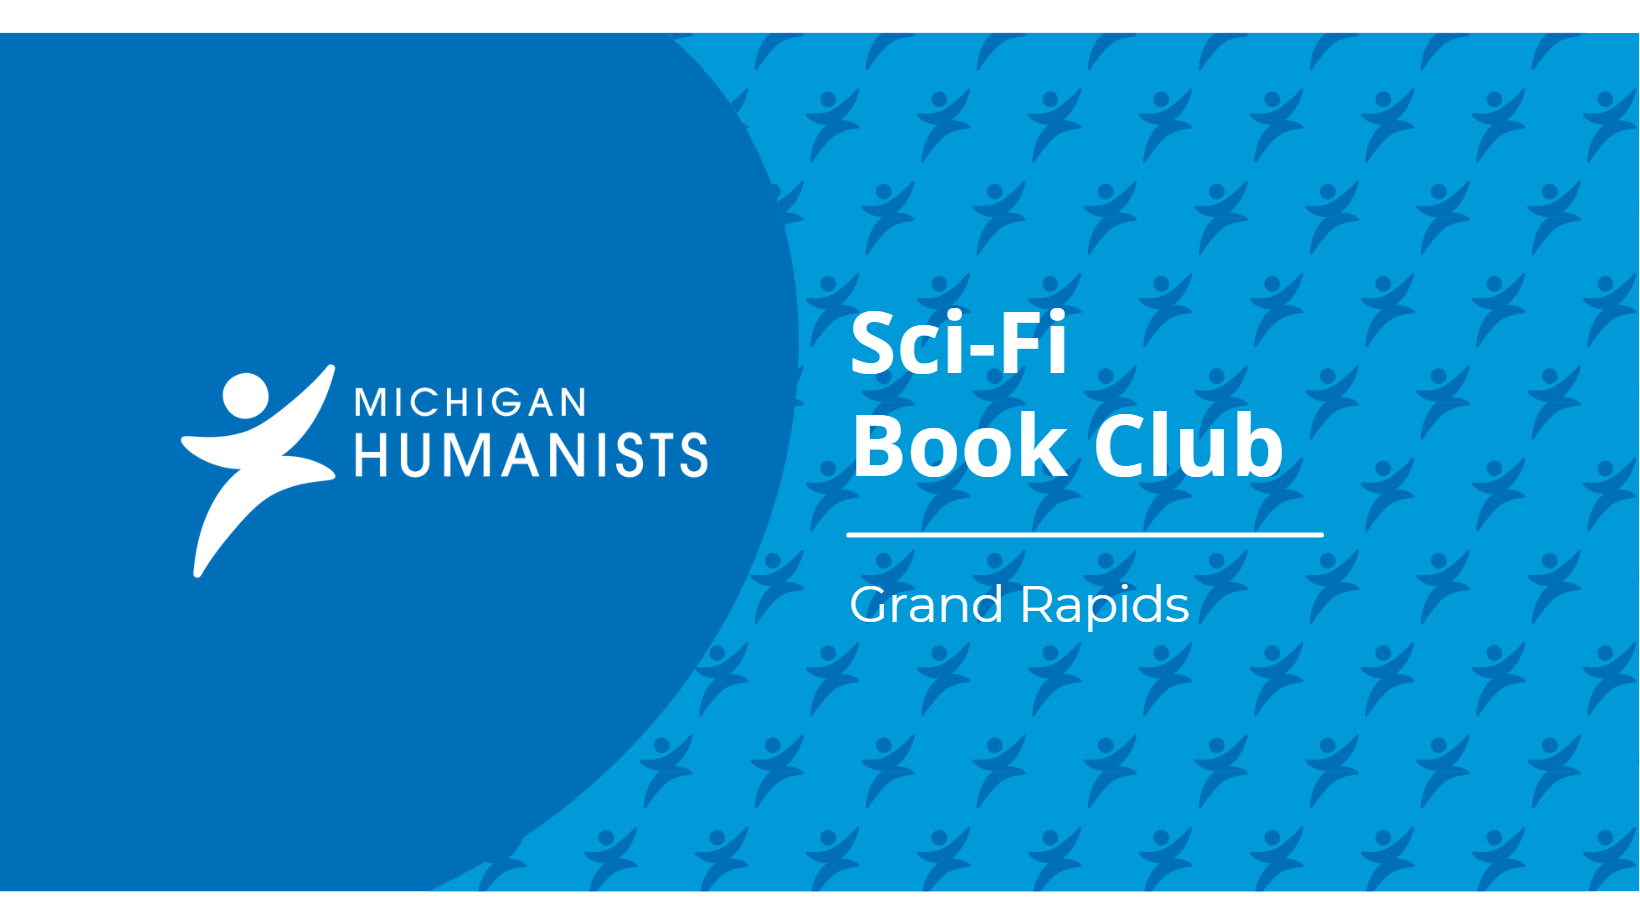 Michigan Humanists Sci-Fi Book Club Grand Rapids